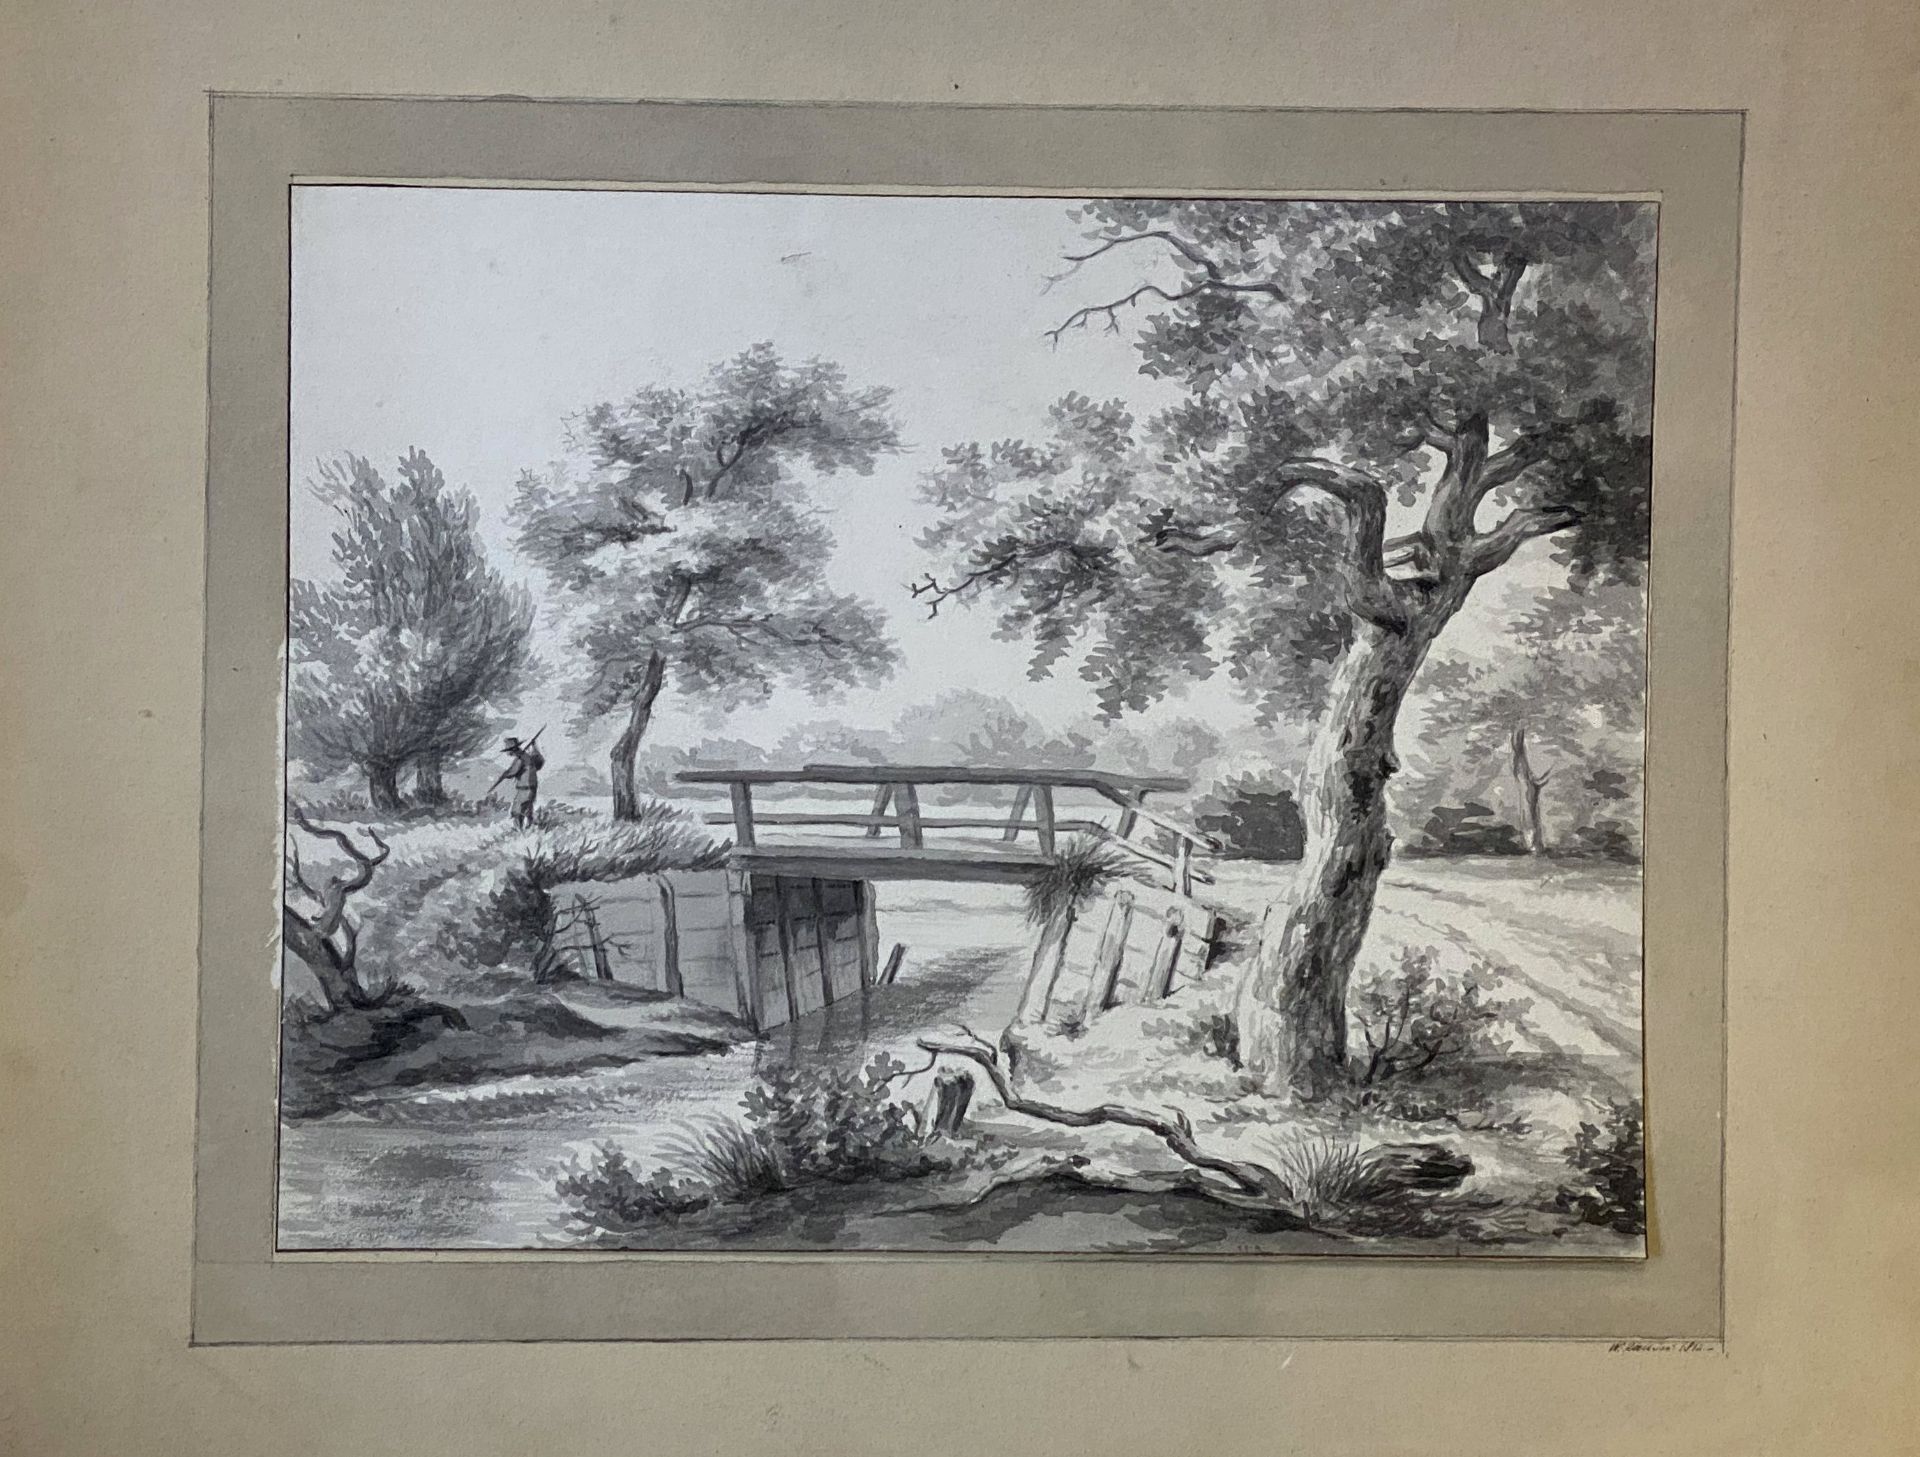 W. Roell, Holzbrücke  in   niederländischer   Landschaft - Bild 2 aus 3